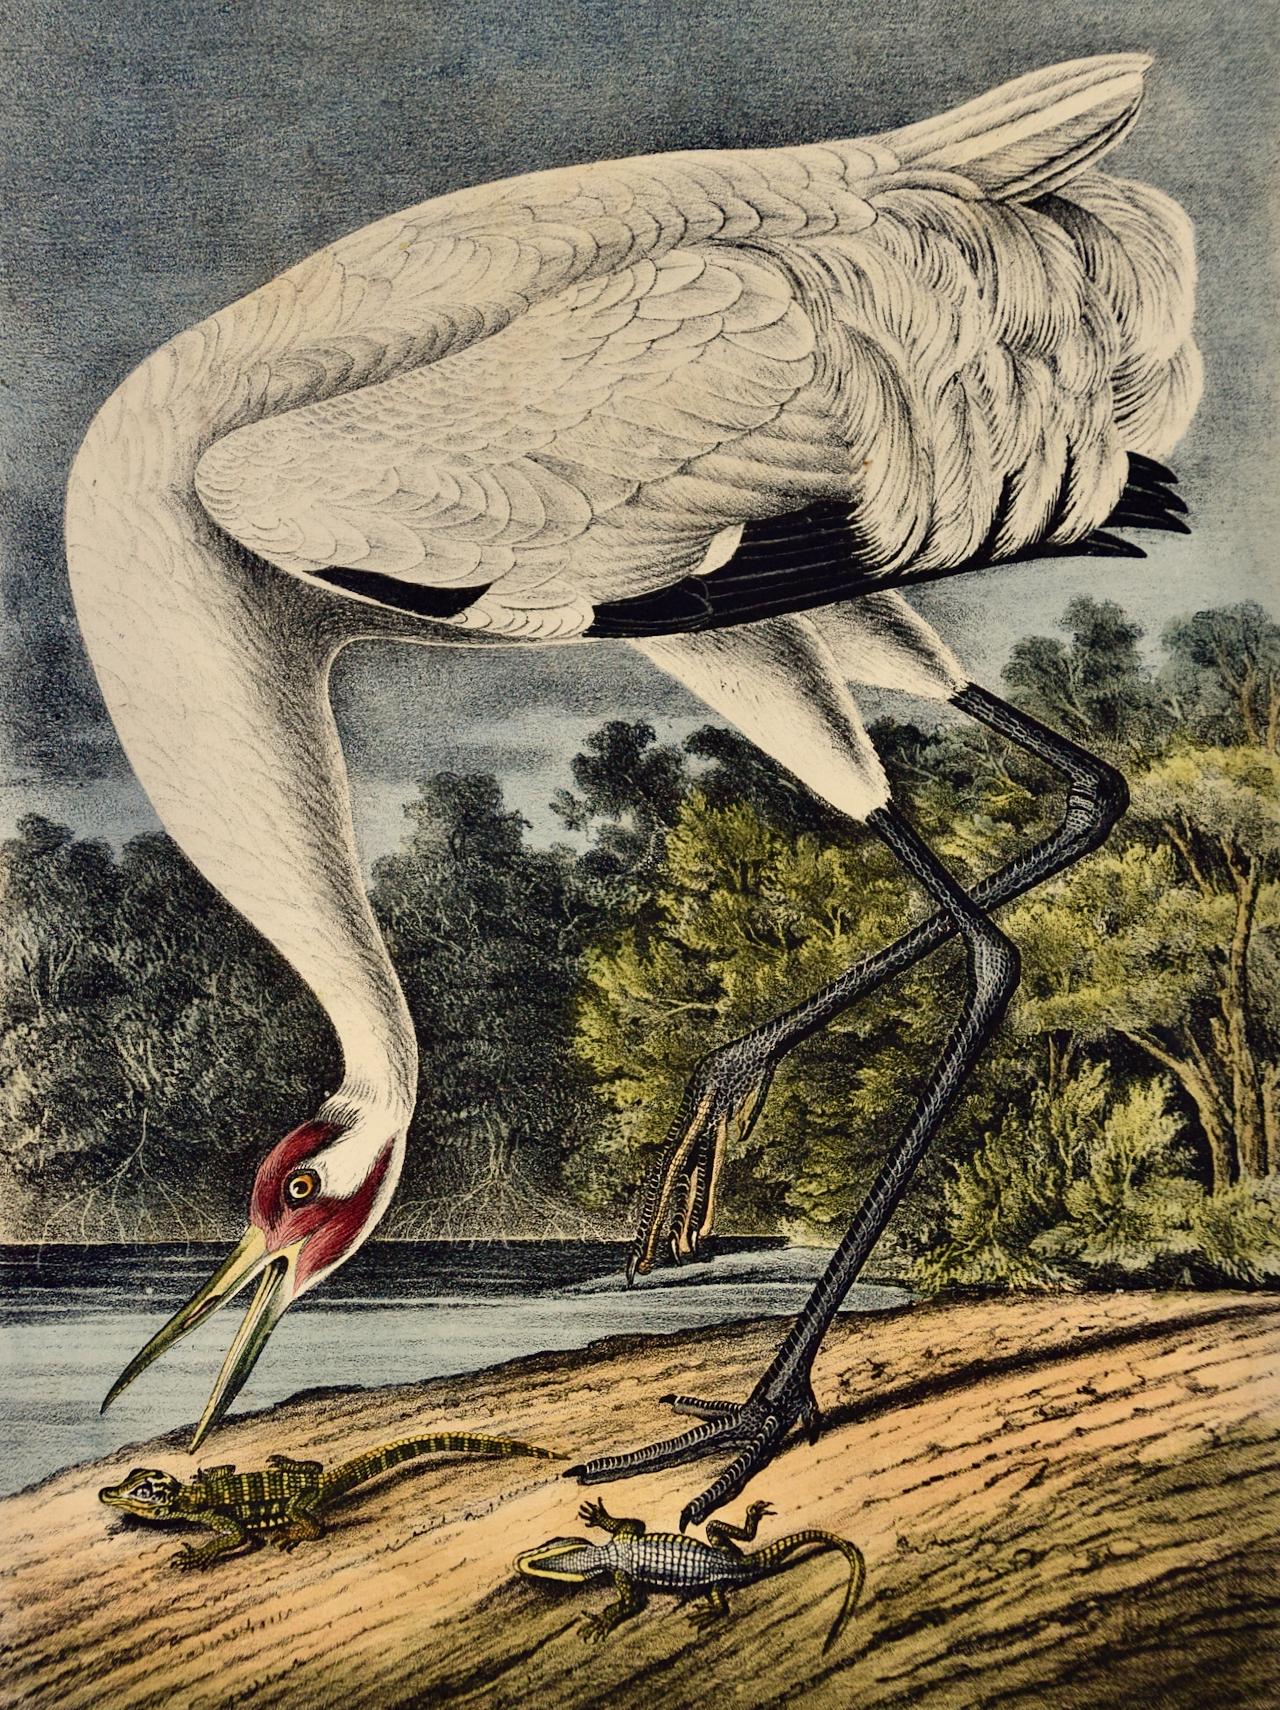 Une grue qui tombe : lithographie originale d'oiseau d'Audubon du 19e siècle colorée à la main - Print de John James Audubon